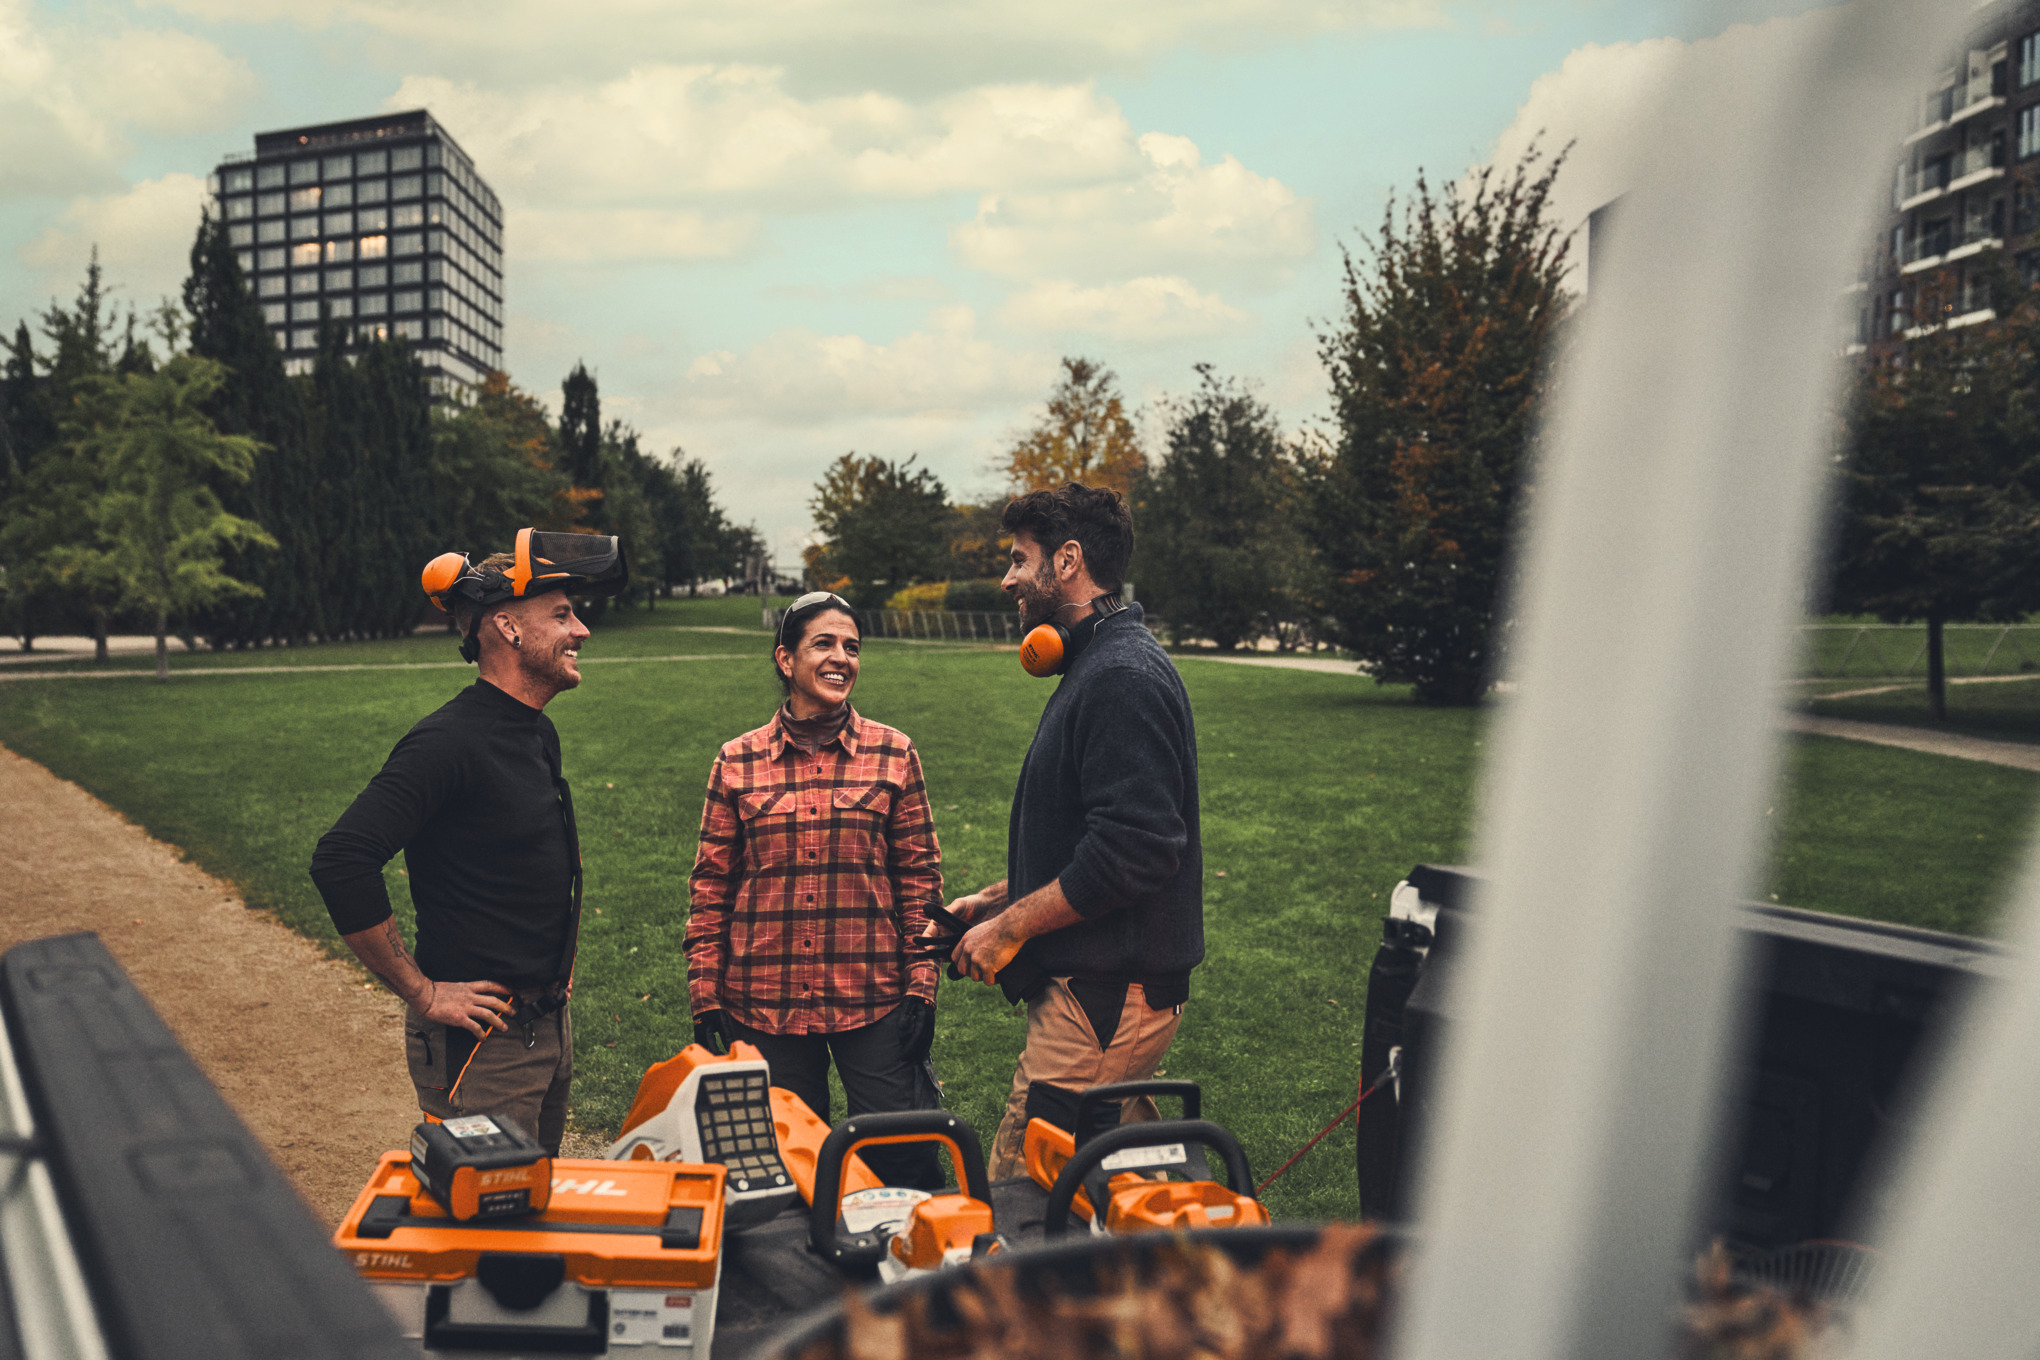 Una squadra di giardinieri e paesaggisti si trova davanti a un camion a pianale su cui sono appoggiati gli attrezzi professionali a batteria STIHL.